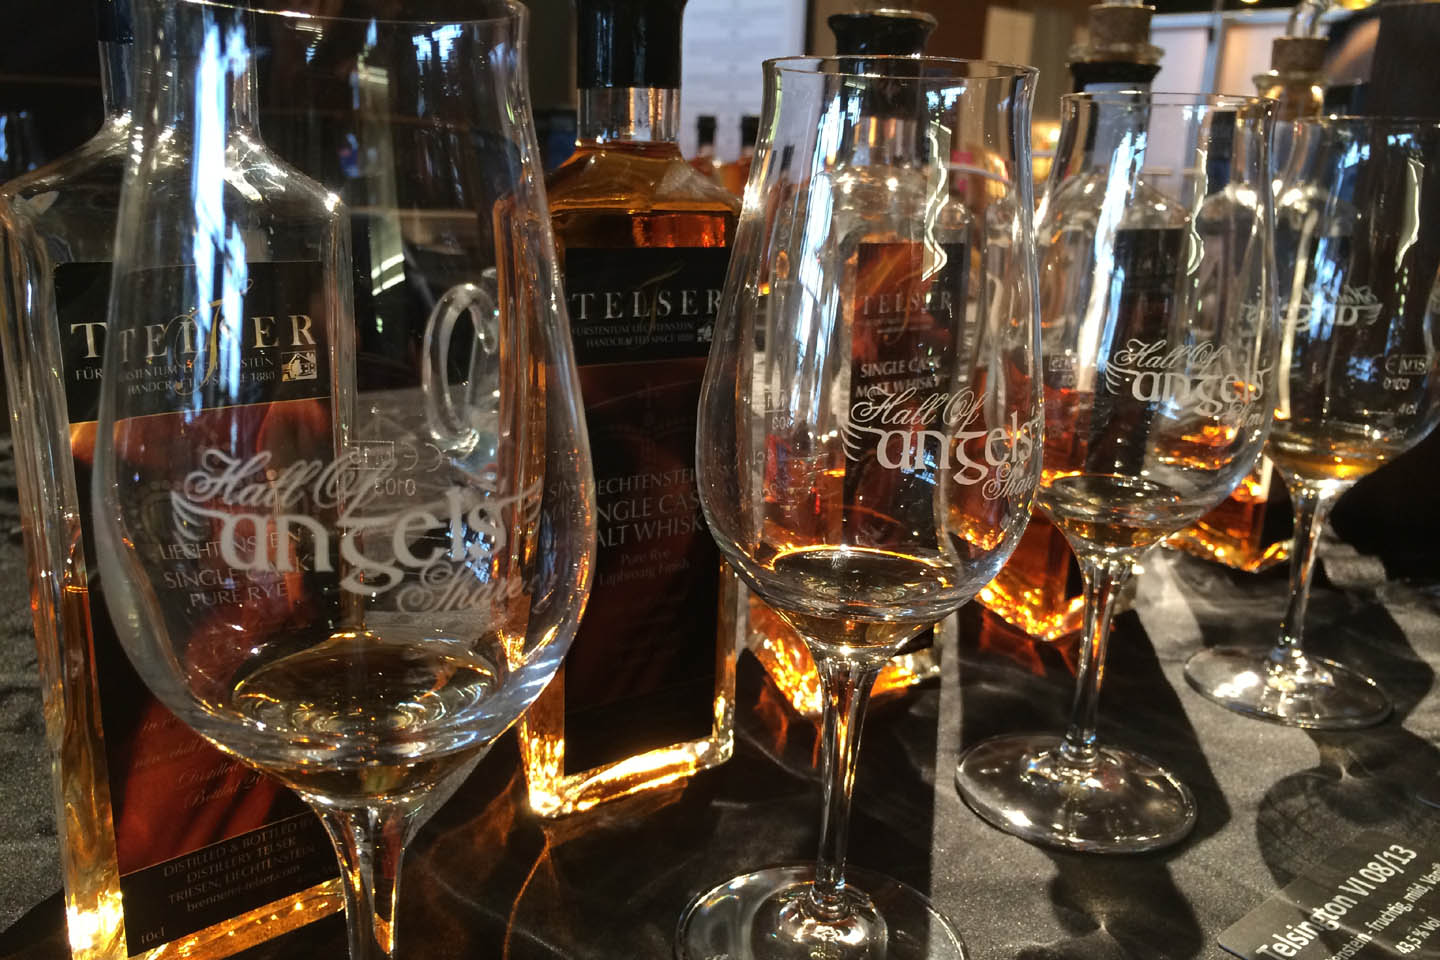 Vier Whiskygläser mit Stil und der Beschriftung Hall of Angels Share stehen vor einer Reihe von eckigen Whiskyflaschen der Marke Telser.